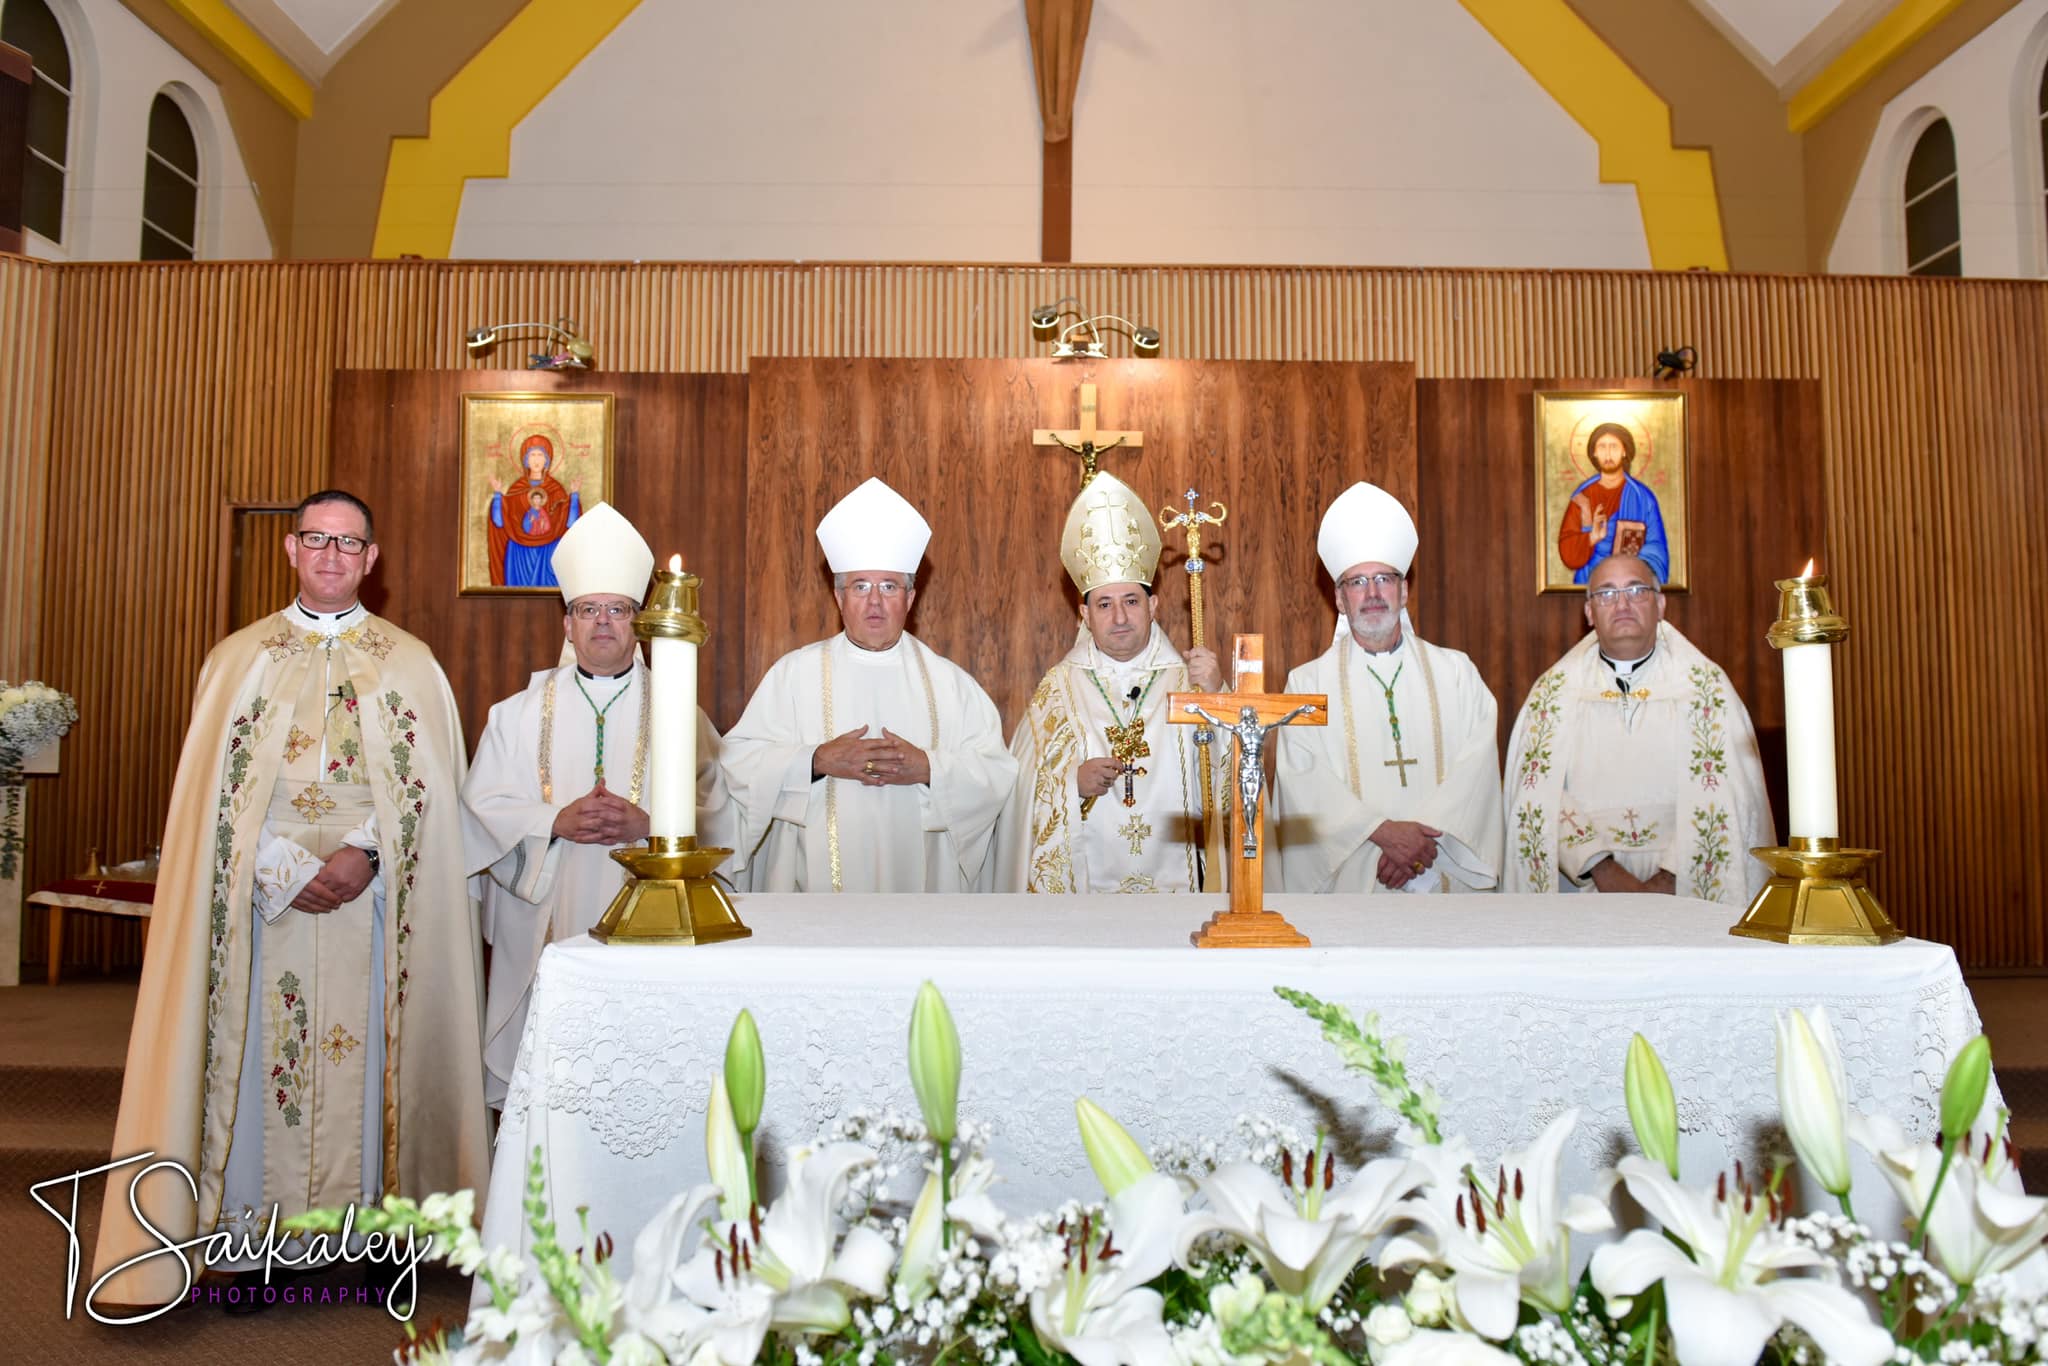 Inauguration de la paroisse St-Paul des Syriaques à Gatineau